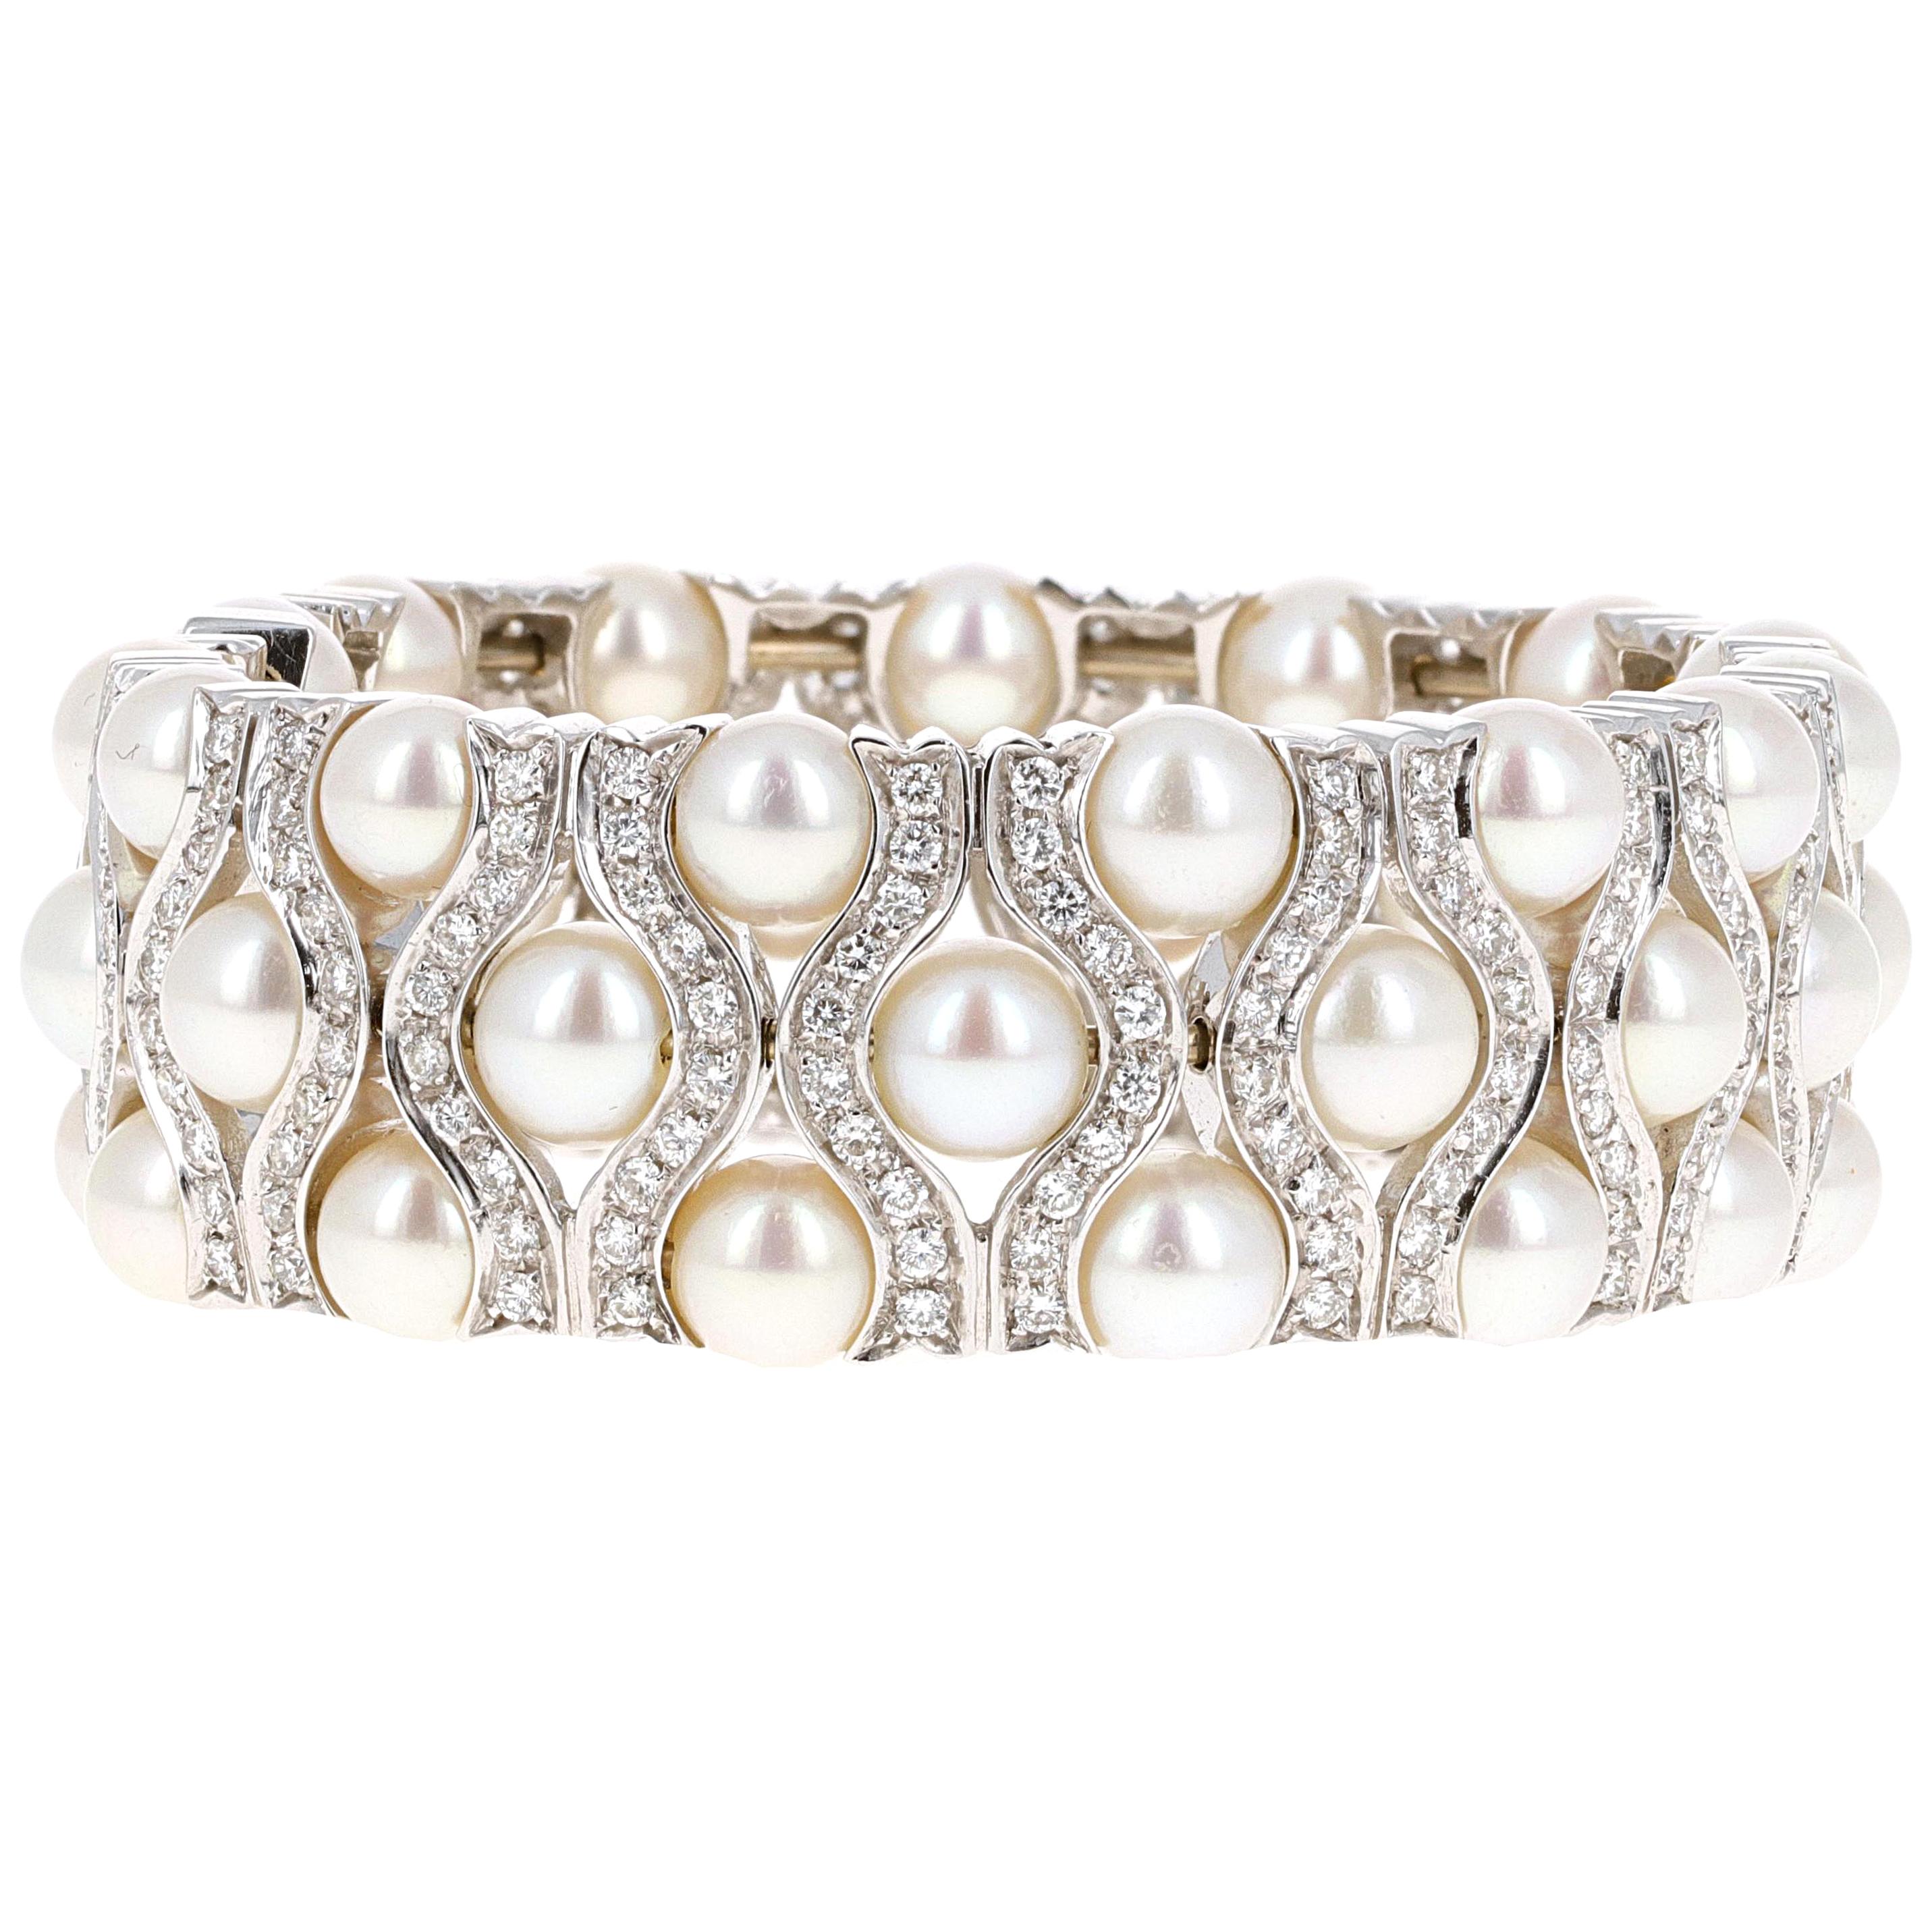 Bracelet manchette en or blanc 18 carats, perles naturelles et diamants. La manchette est légèrement flexible, ce qui vous permet de la placer sur votre poignet avec facilité et de l'enlever sans souci. La manchette comporte 300 diamants blancs